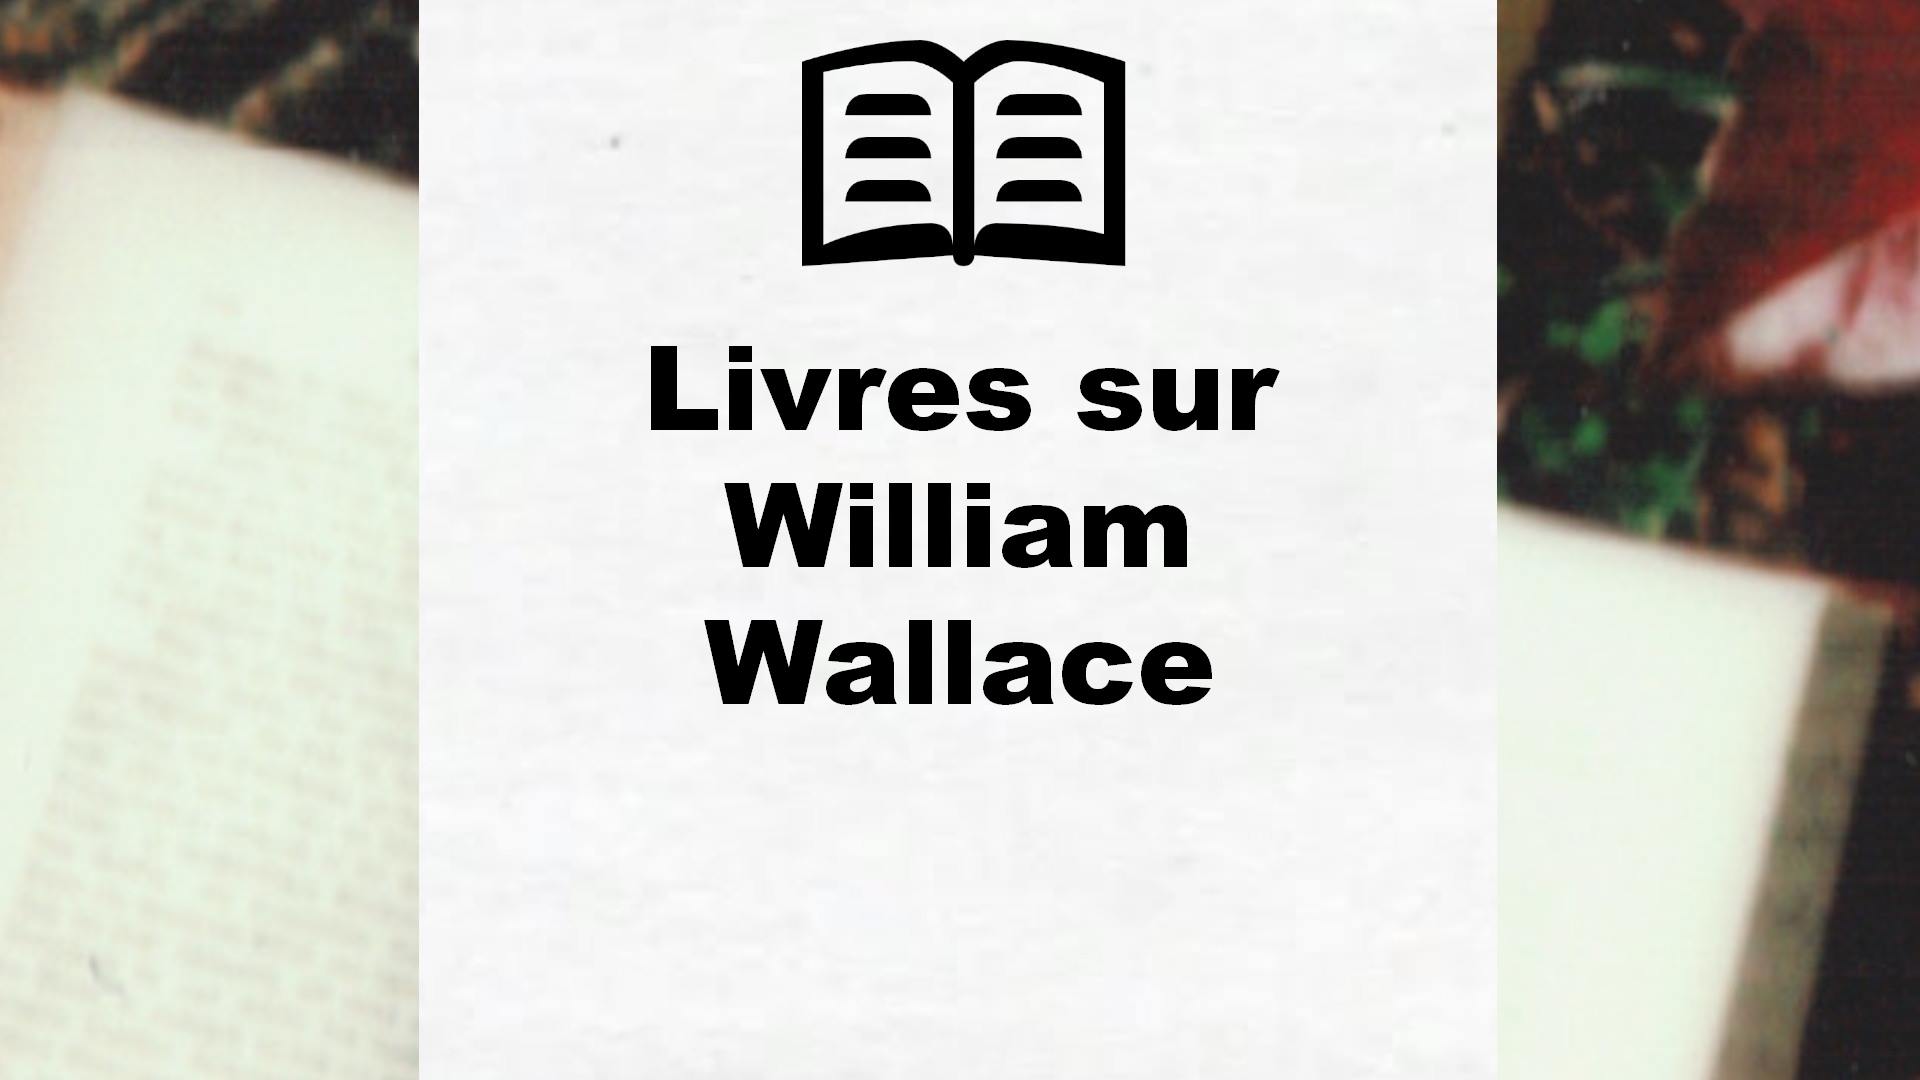 Livres sur William Wallace